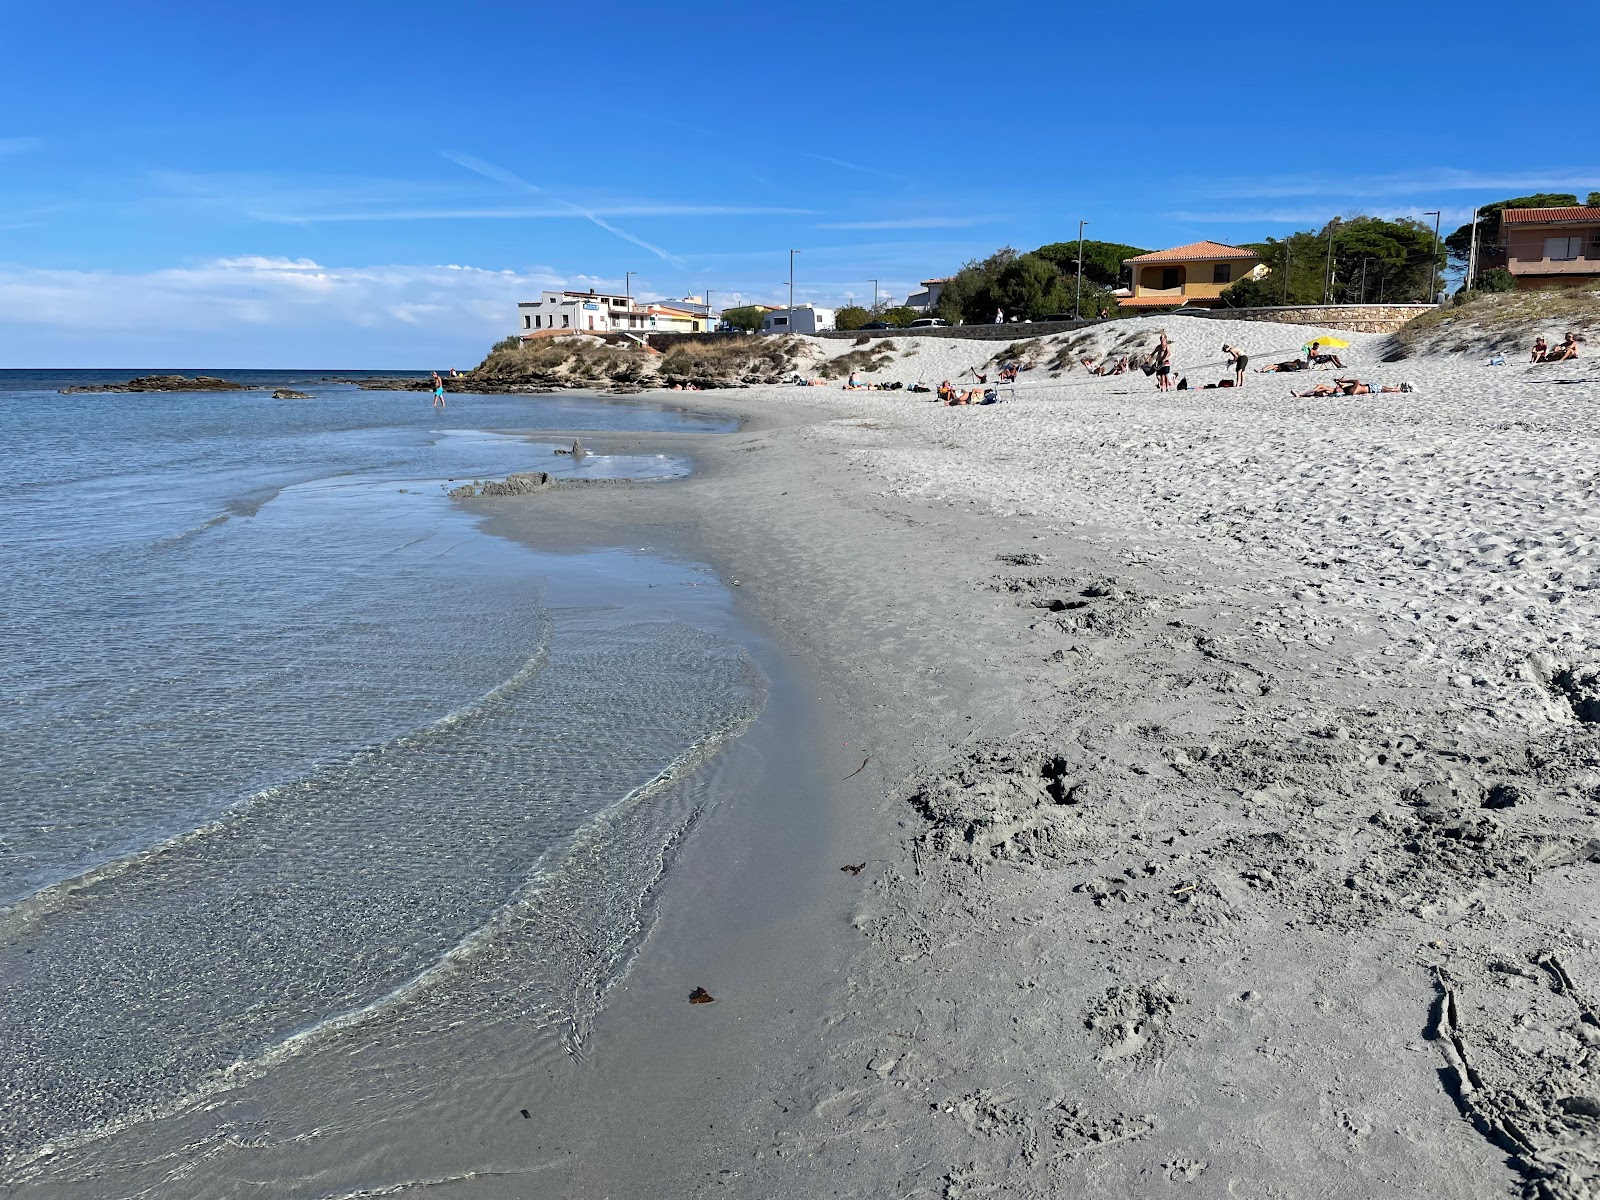 Foto af Spiaggia di Santa Lucia - populært sted blandt afslapningskendere